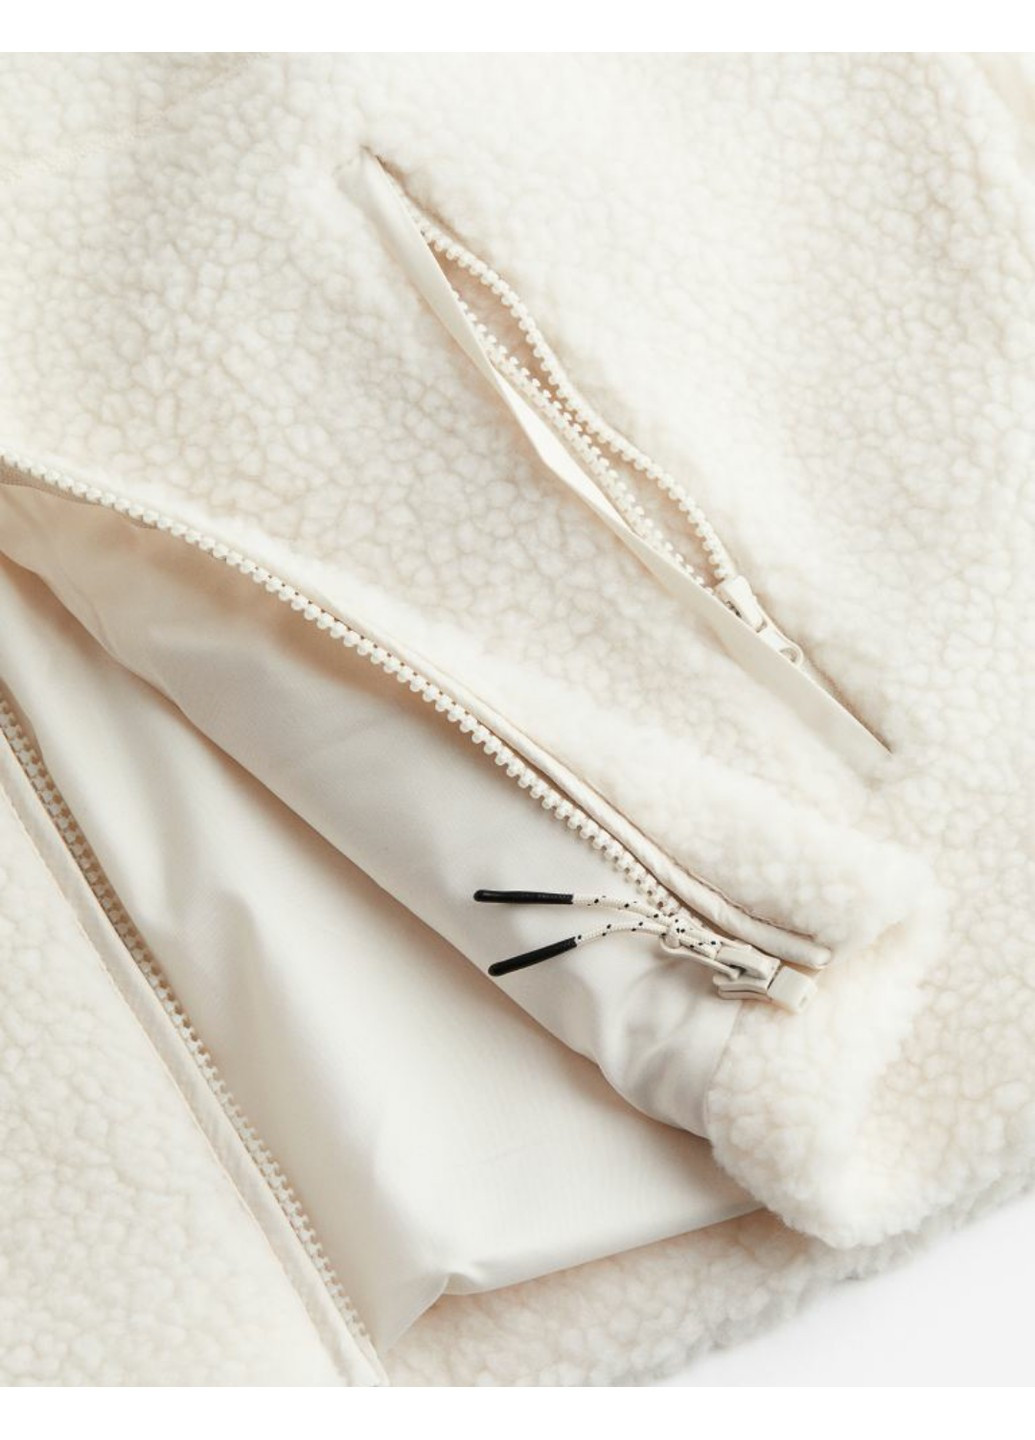 Белая демисезонная женская плюшевая куртка н&м (56190) xs белая H&M